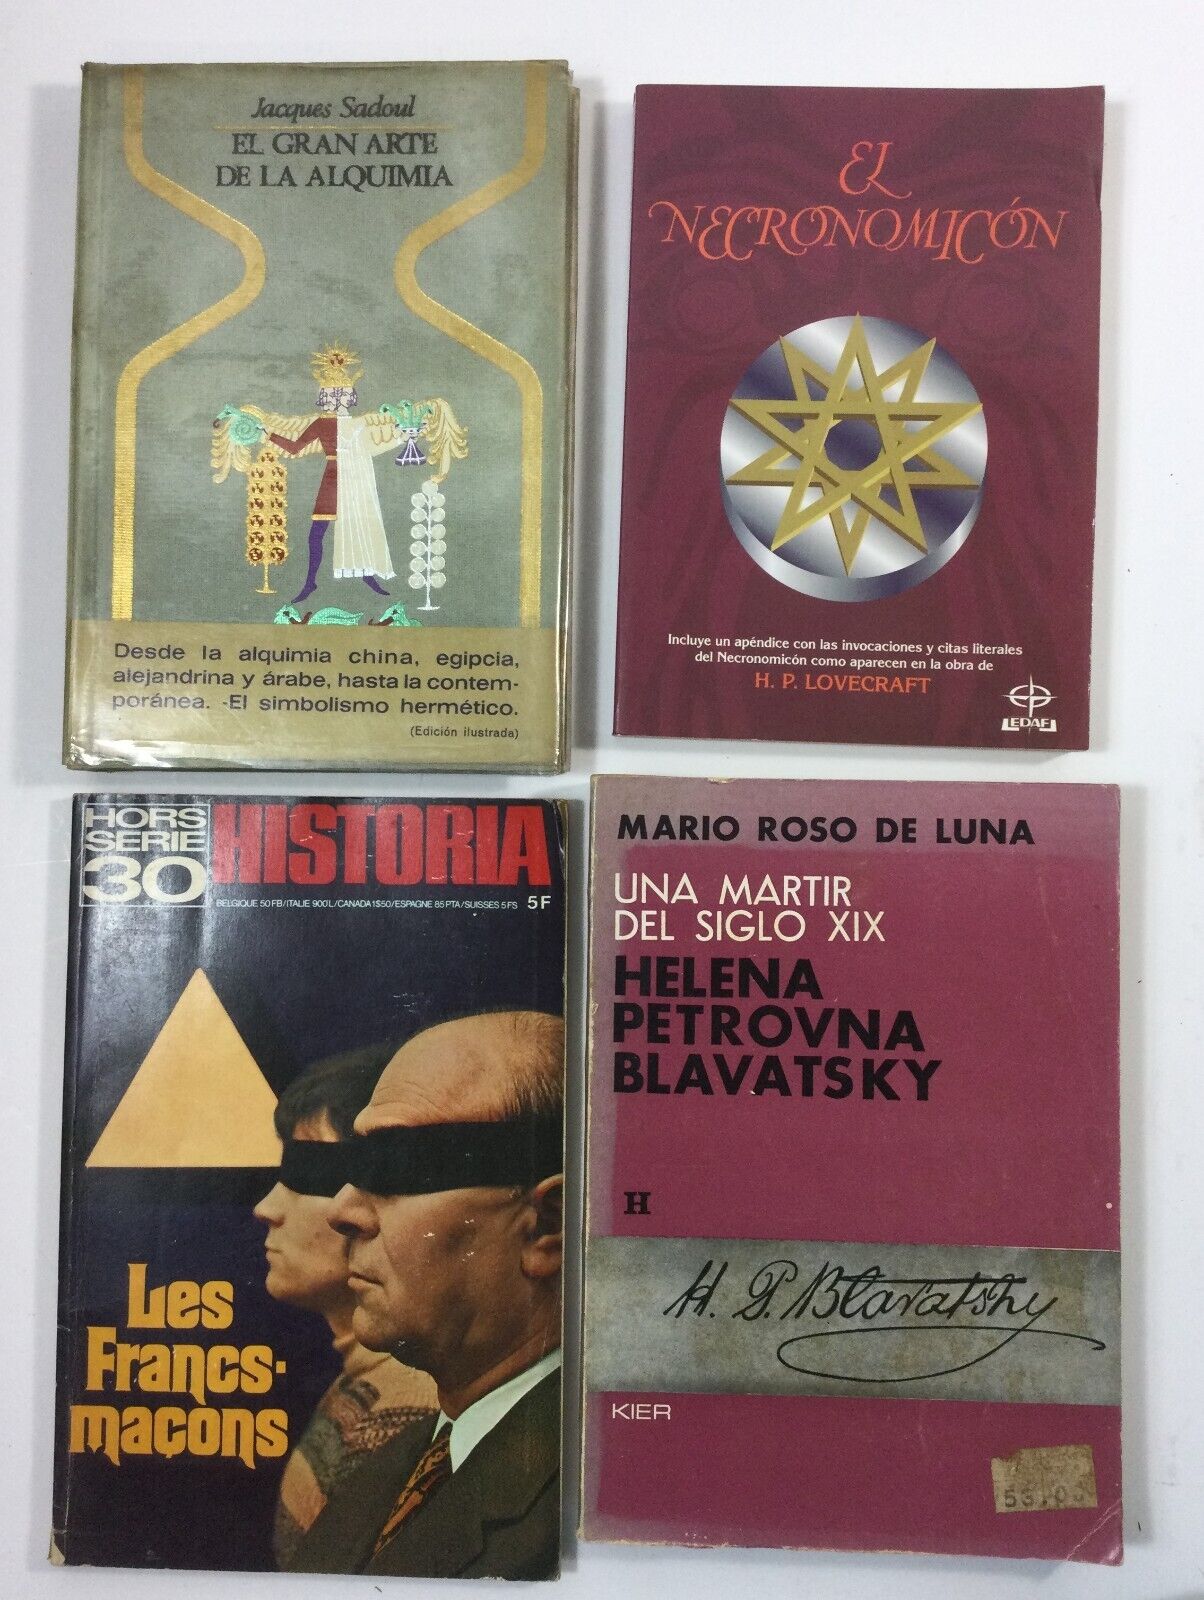 4 Vintage Spanish Books On Mysticism